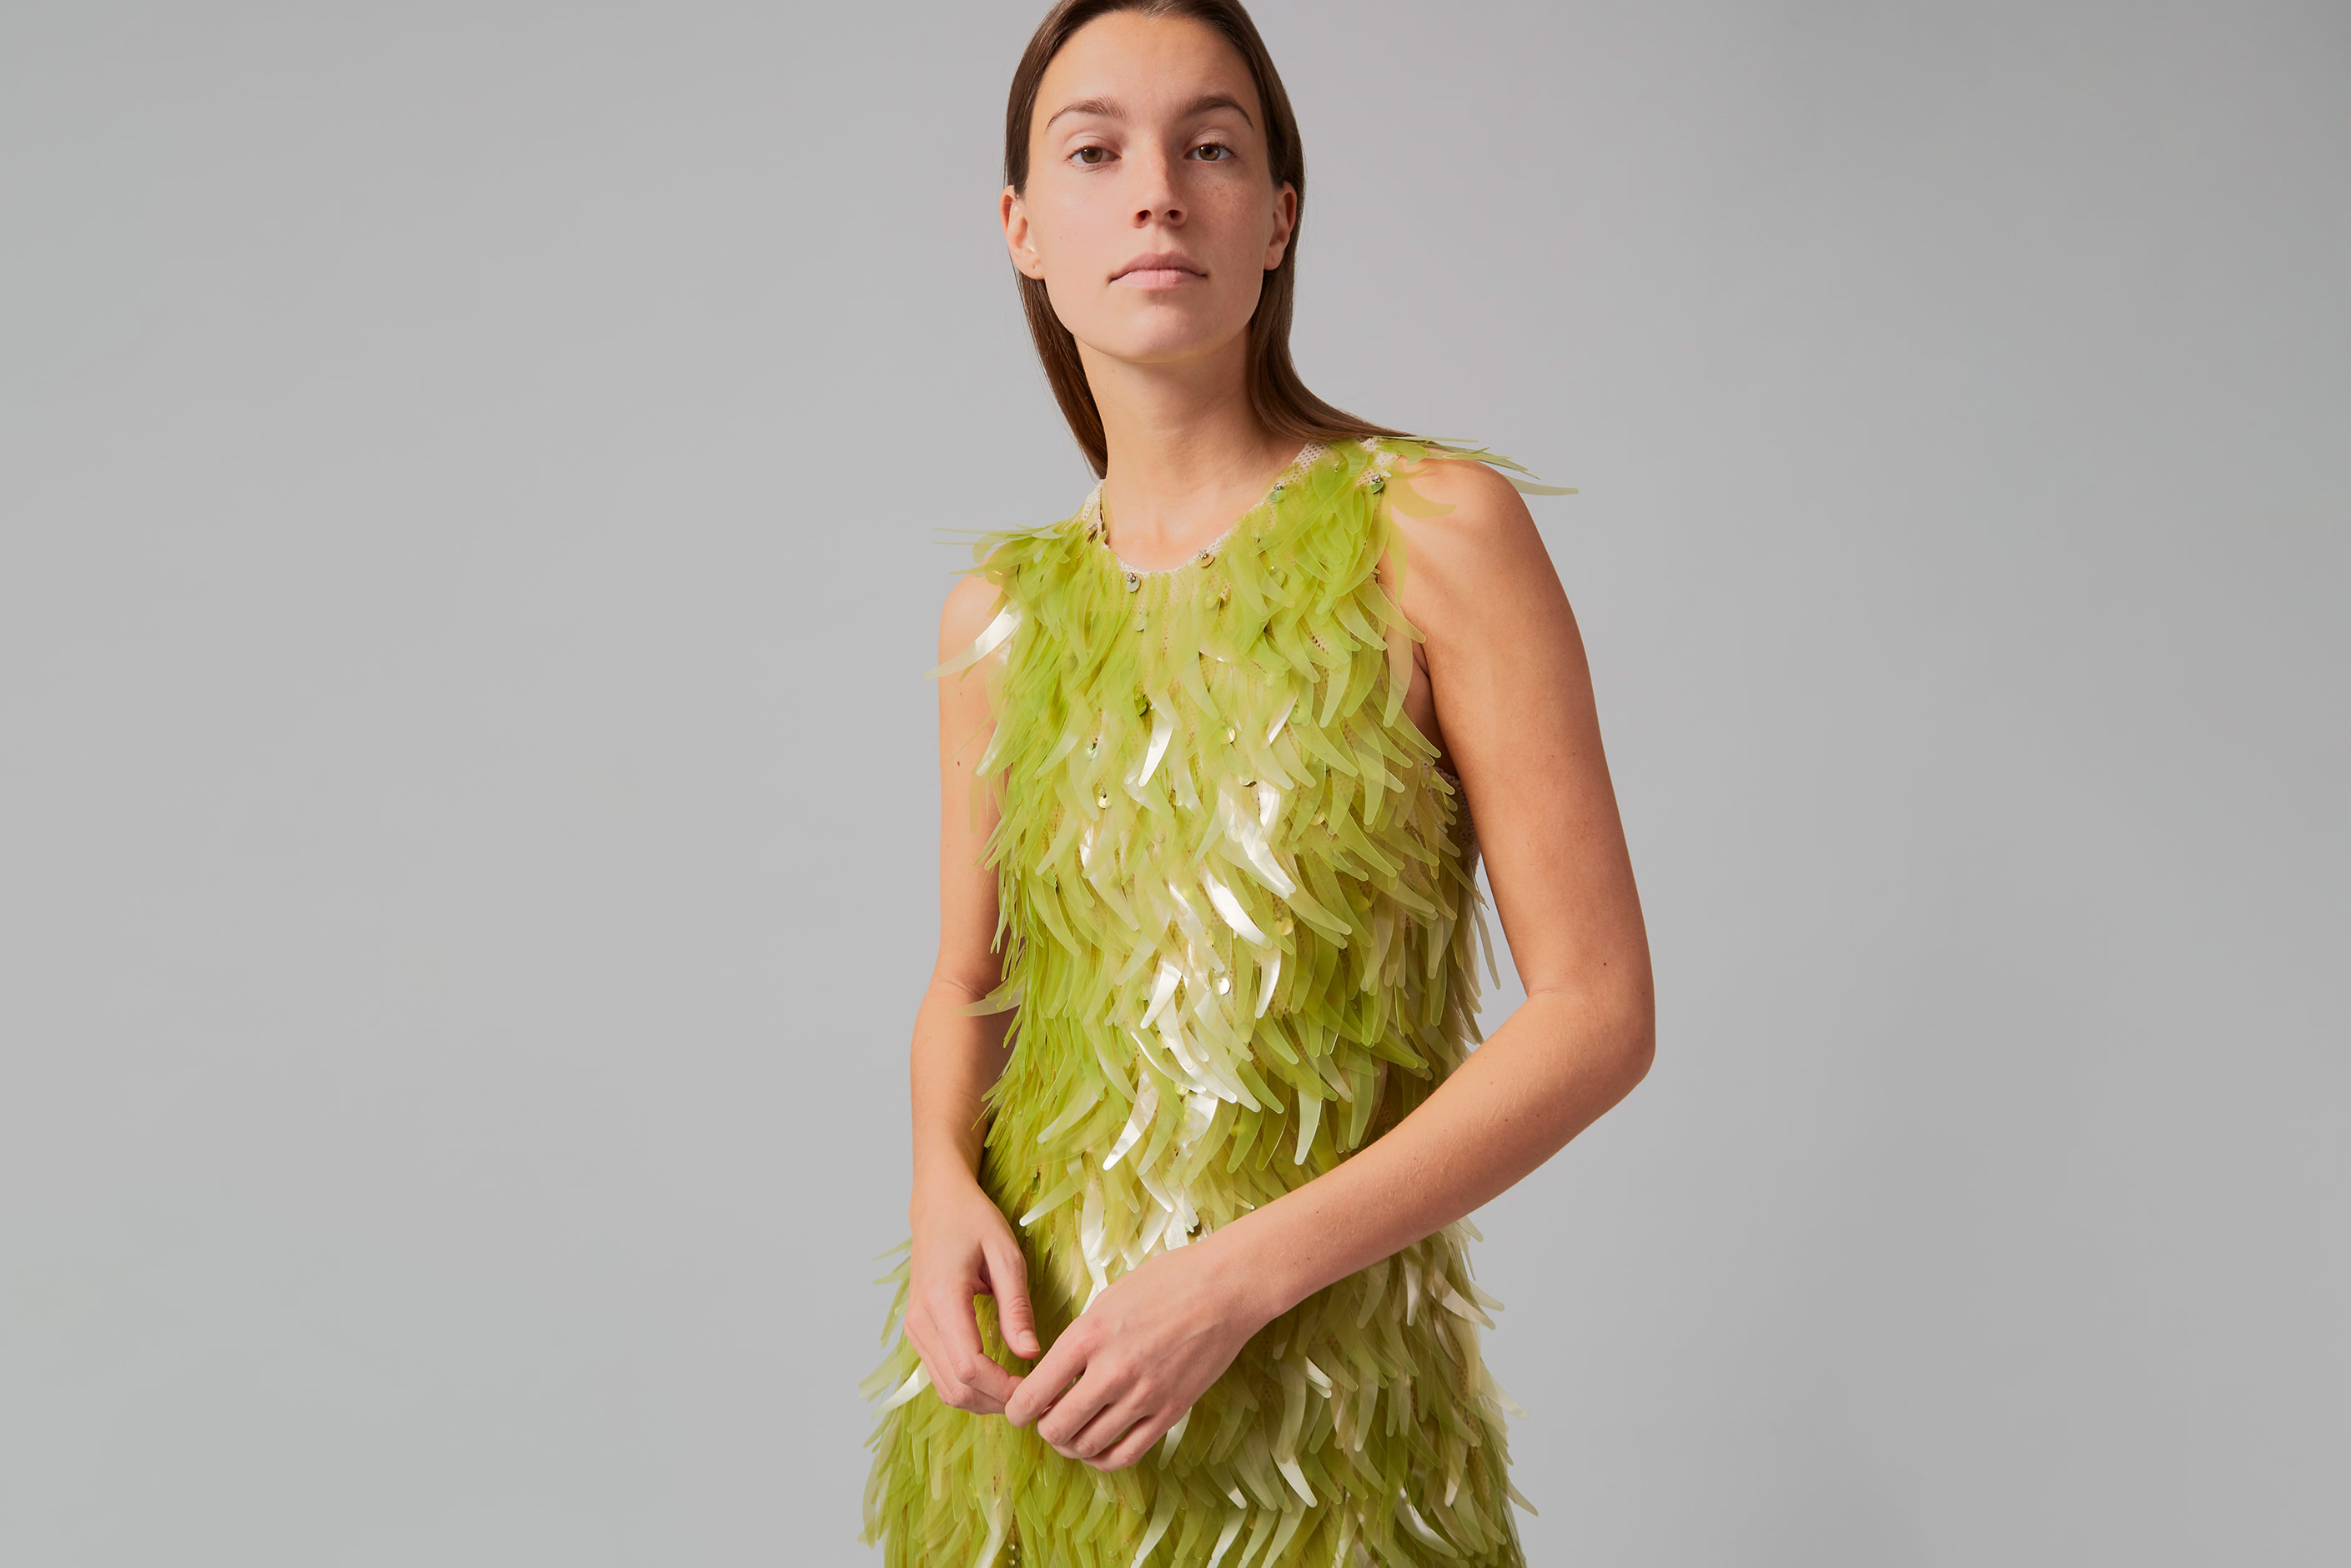 Sleeveless Dress - Sustainable Fashion